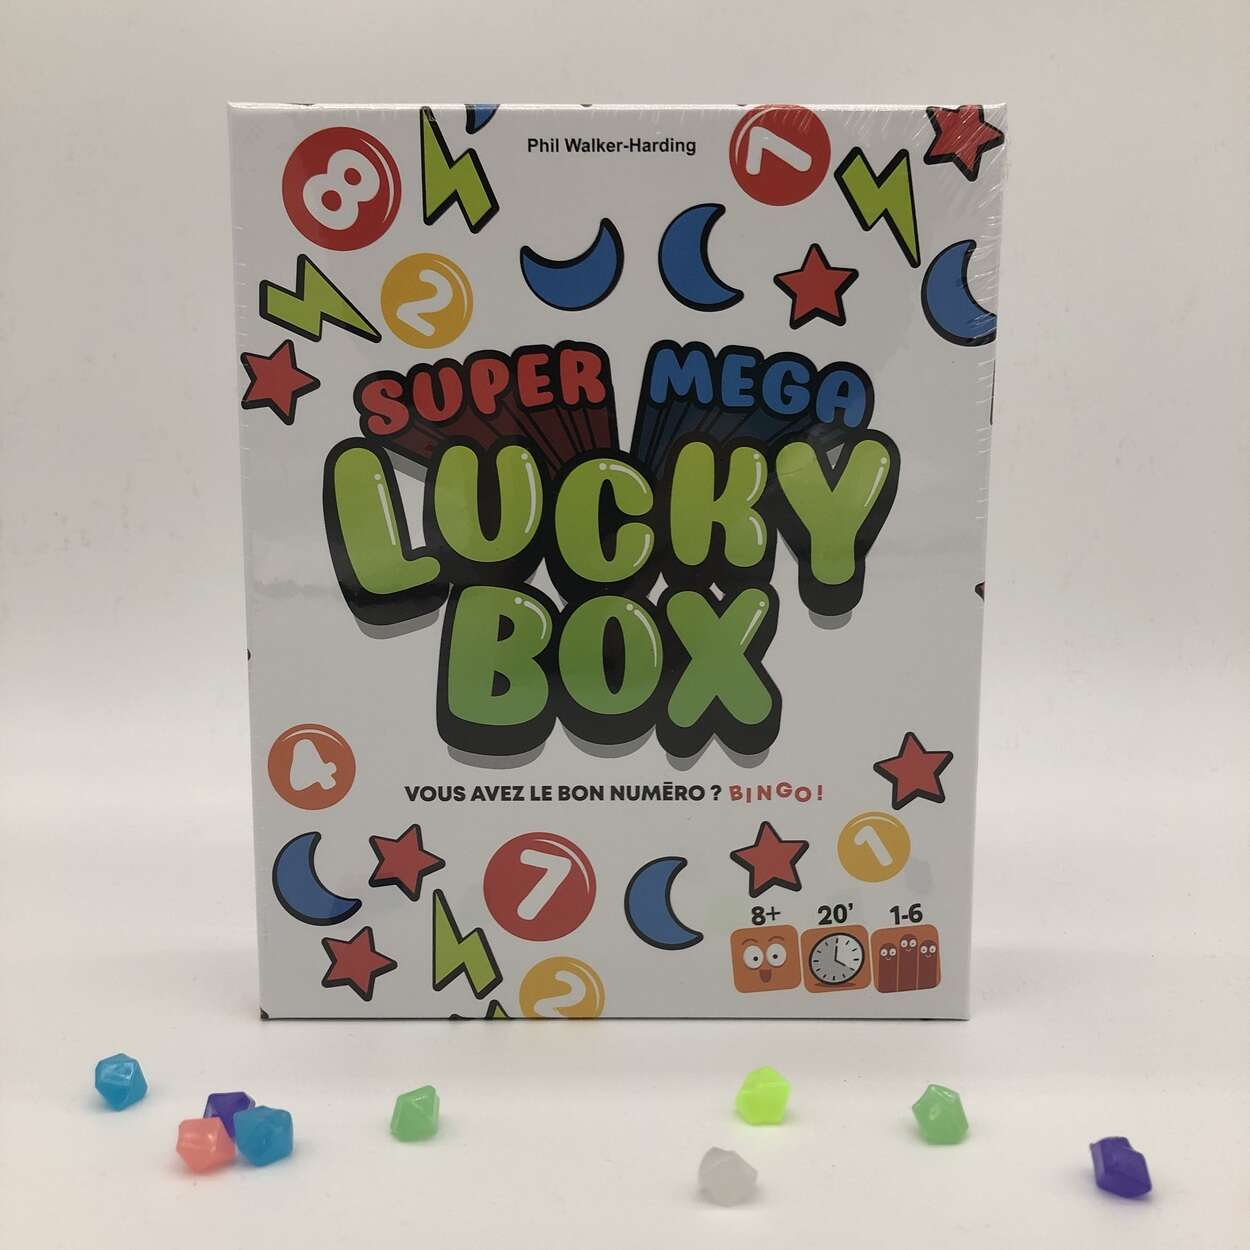 Super méga lucky box